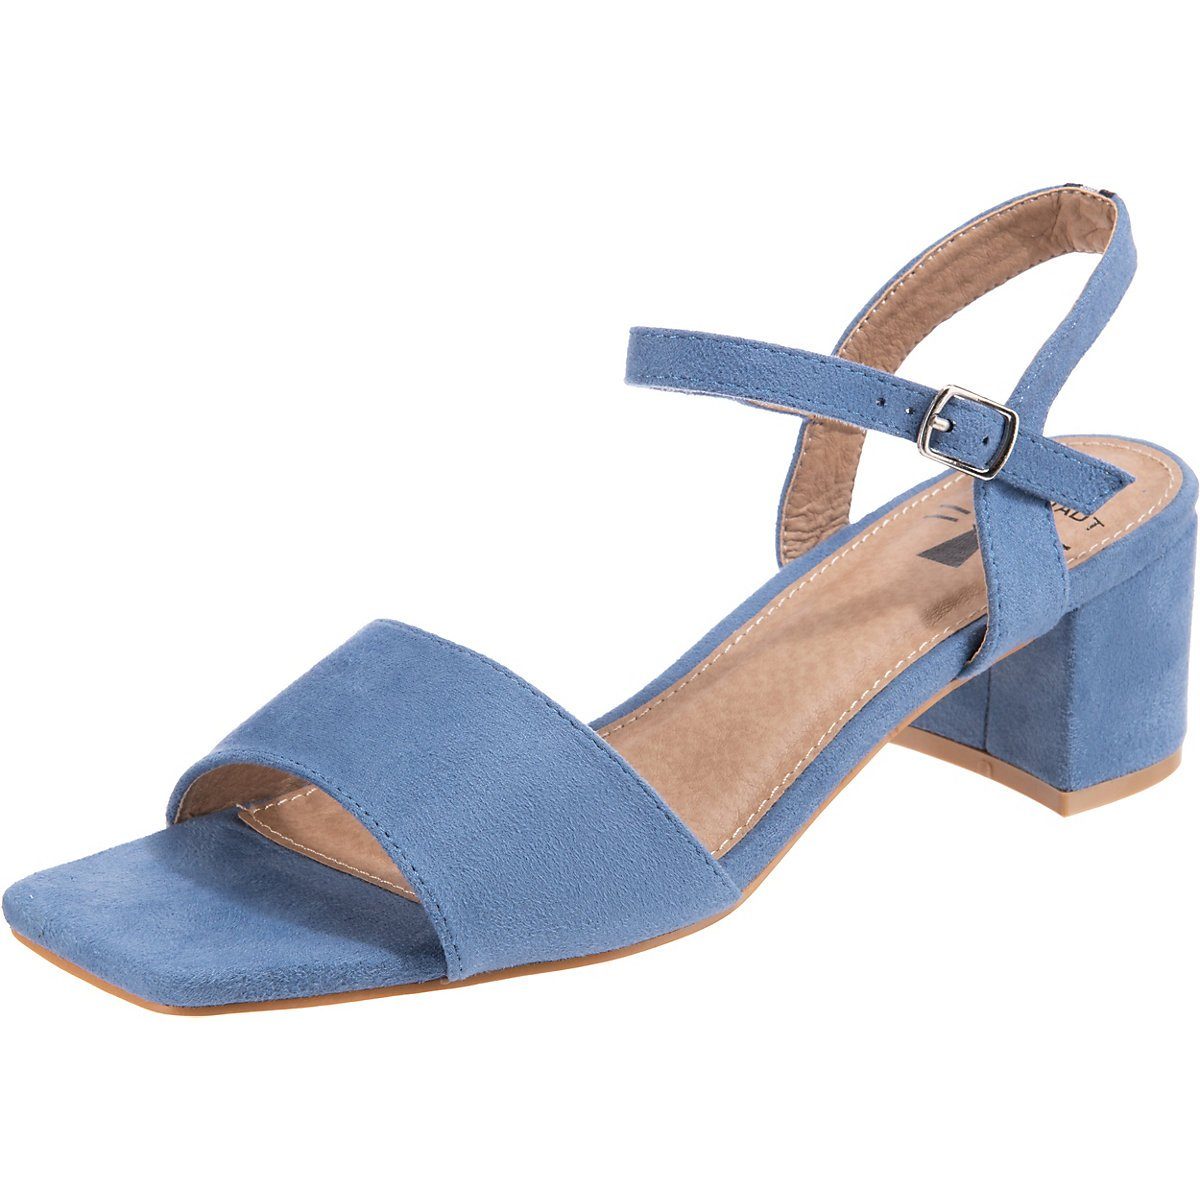 Blaue Sandaletten online kaufen | OTTO